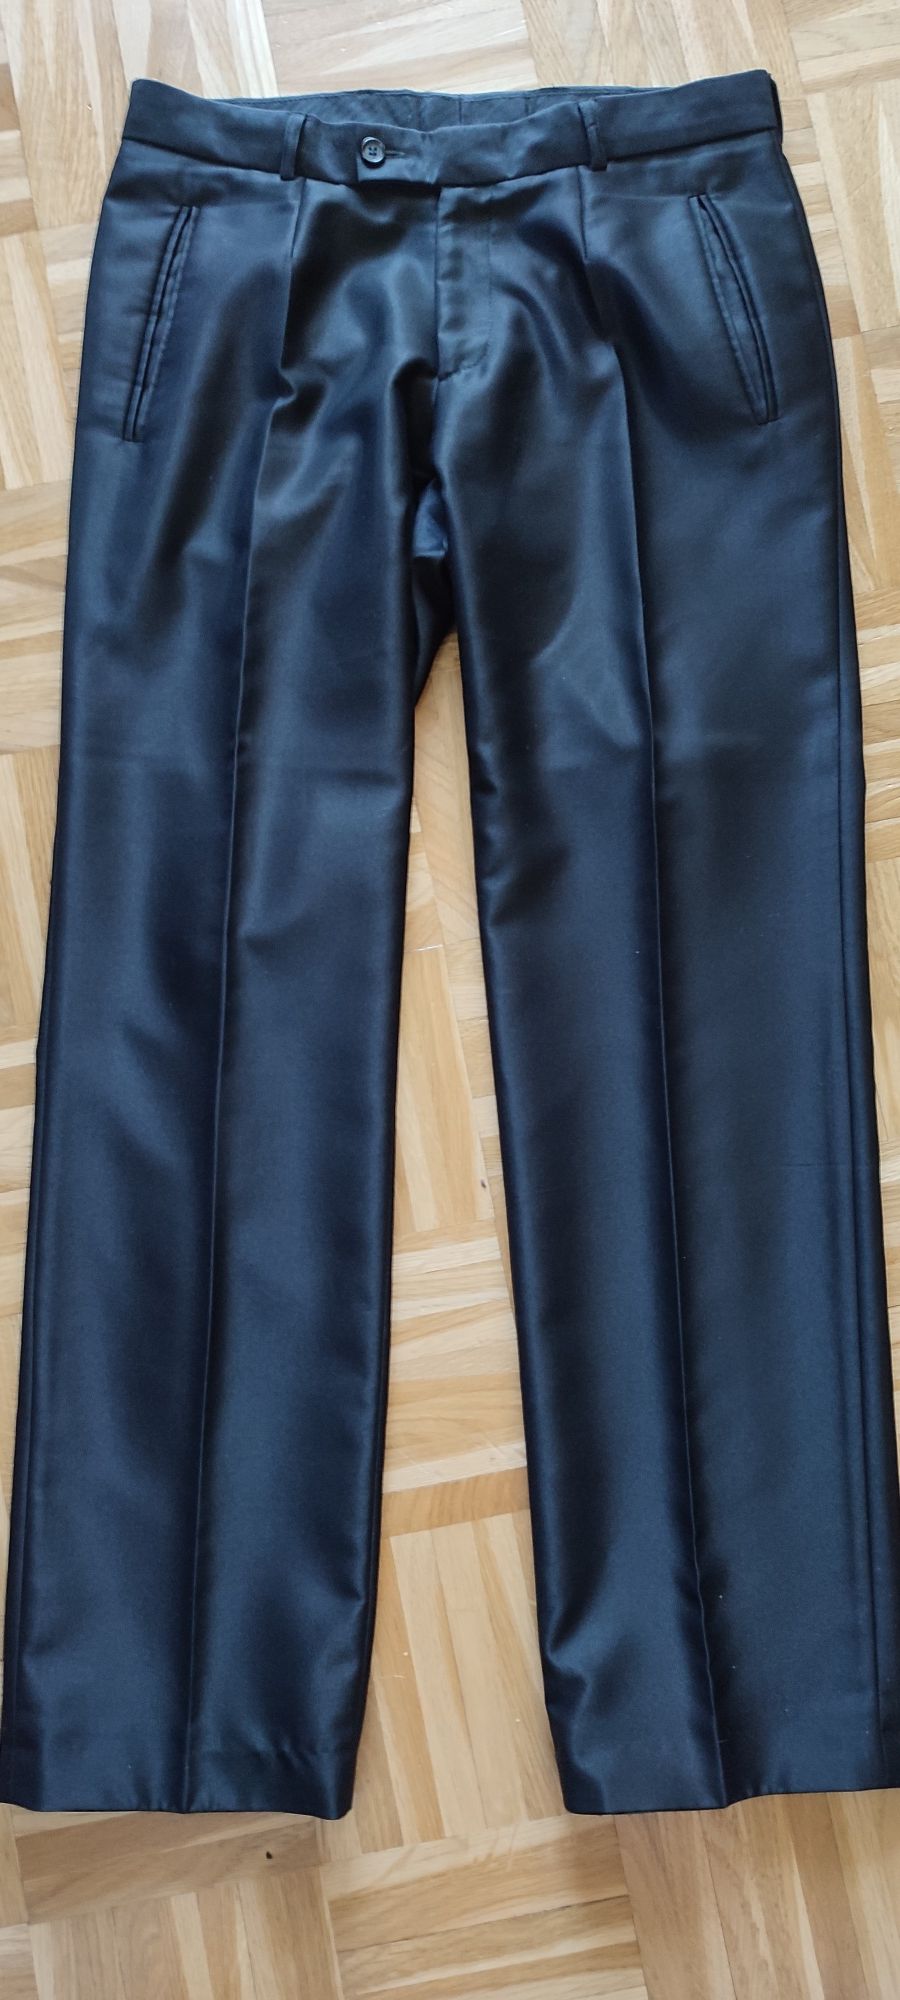 Spodnie garniturowe czarne z połyskiem M 48